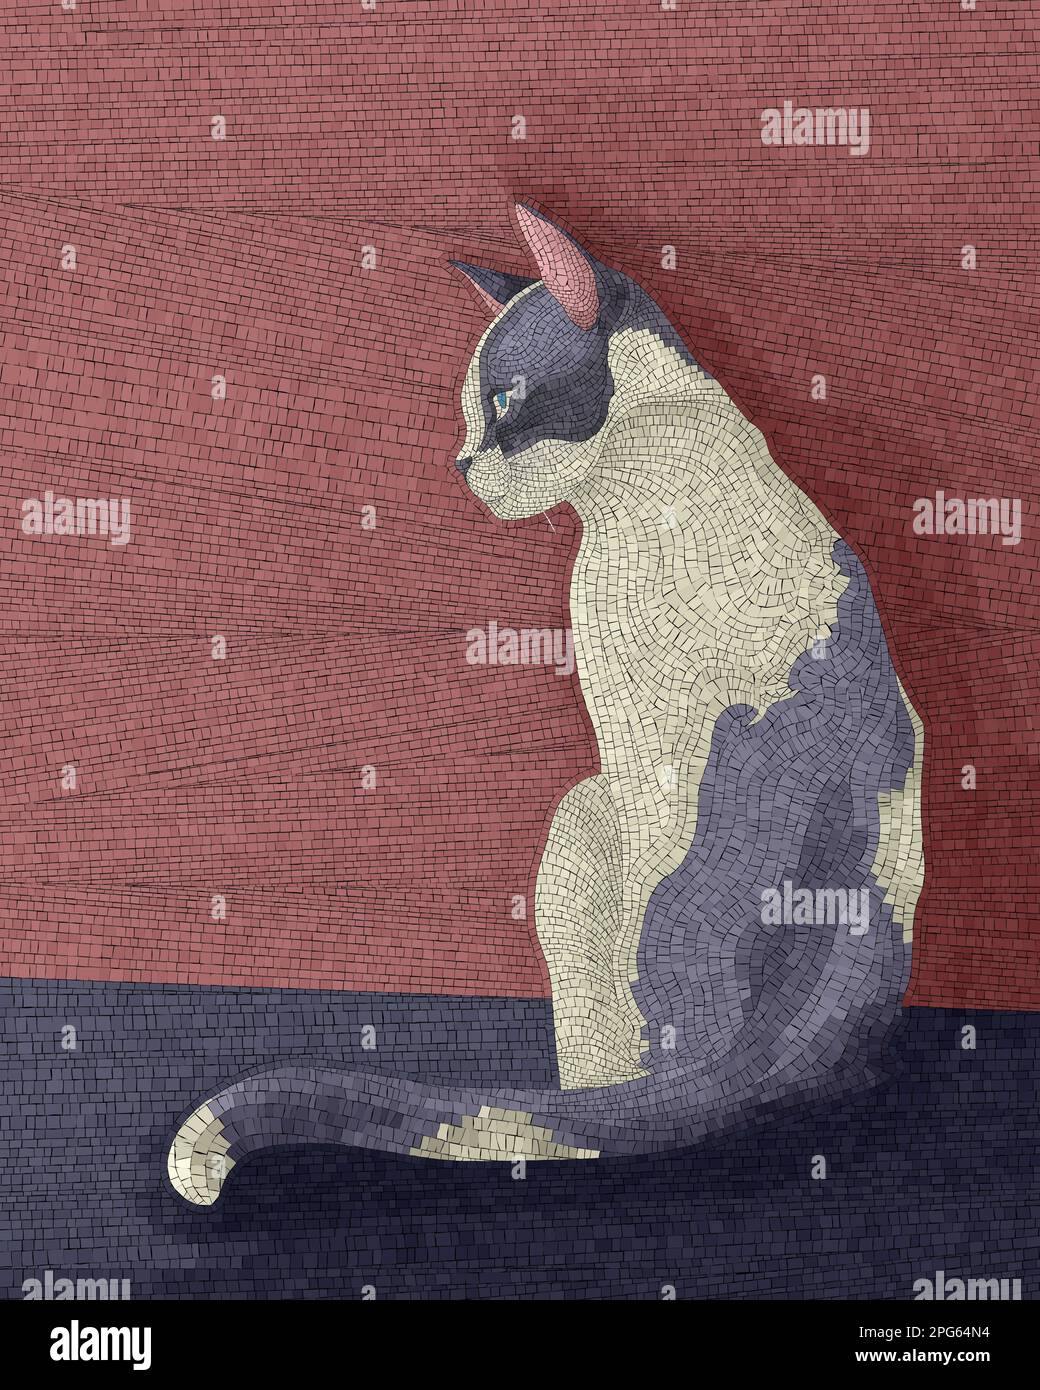 Mosaïque de chat tacheté, illustration vectorielle Banque D'Images